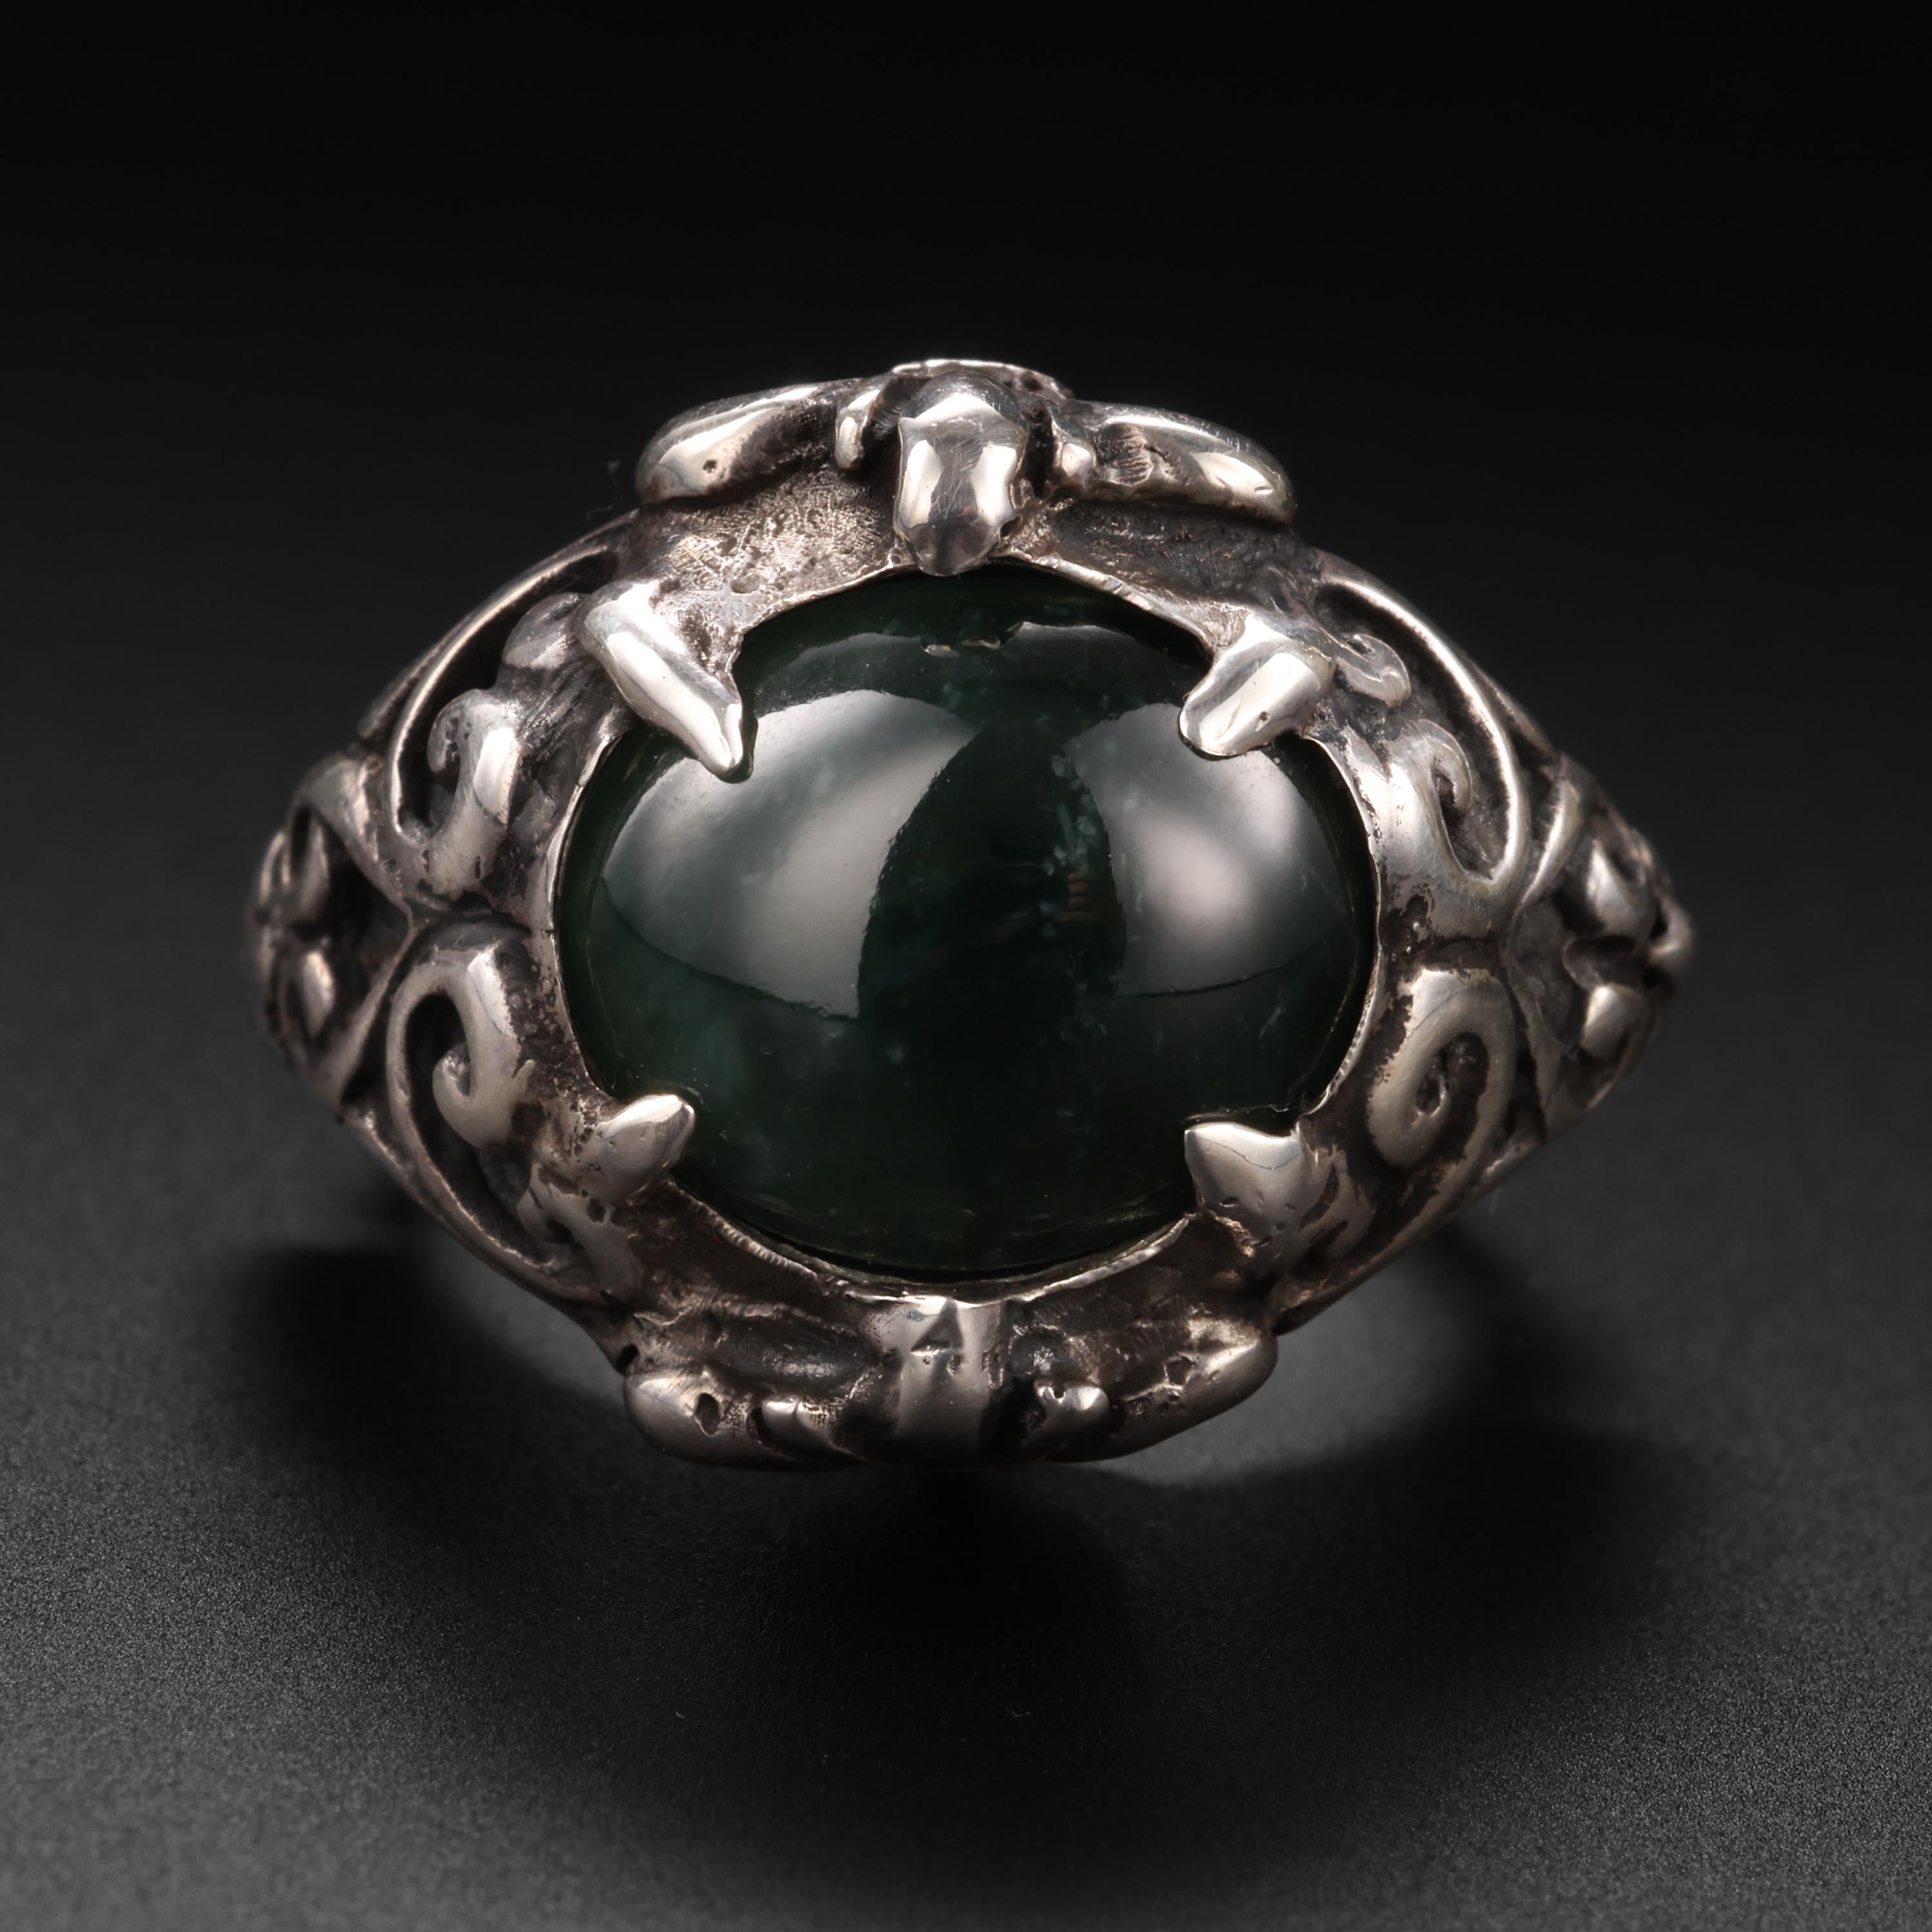 Dieser moderne, handgefertigte Silberring im Barockstil sieht aus wie ein Ring aus dem 17. Jahrhundert und präsentiert einen hochglanzpolierten ovalen Cabochon aus zertifiziertem, unbehandeltem schwarzem burmesischem Jadeit. Eigentlich ist es